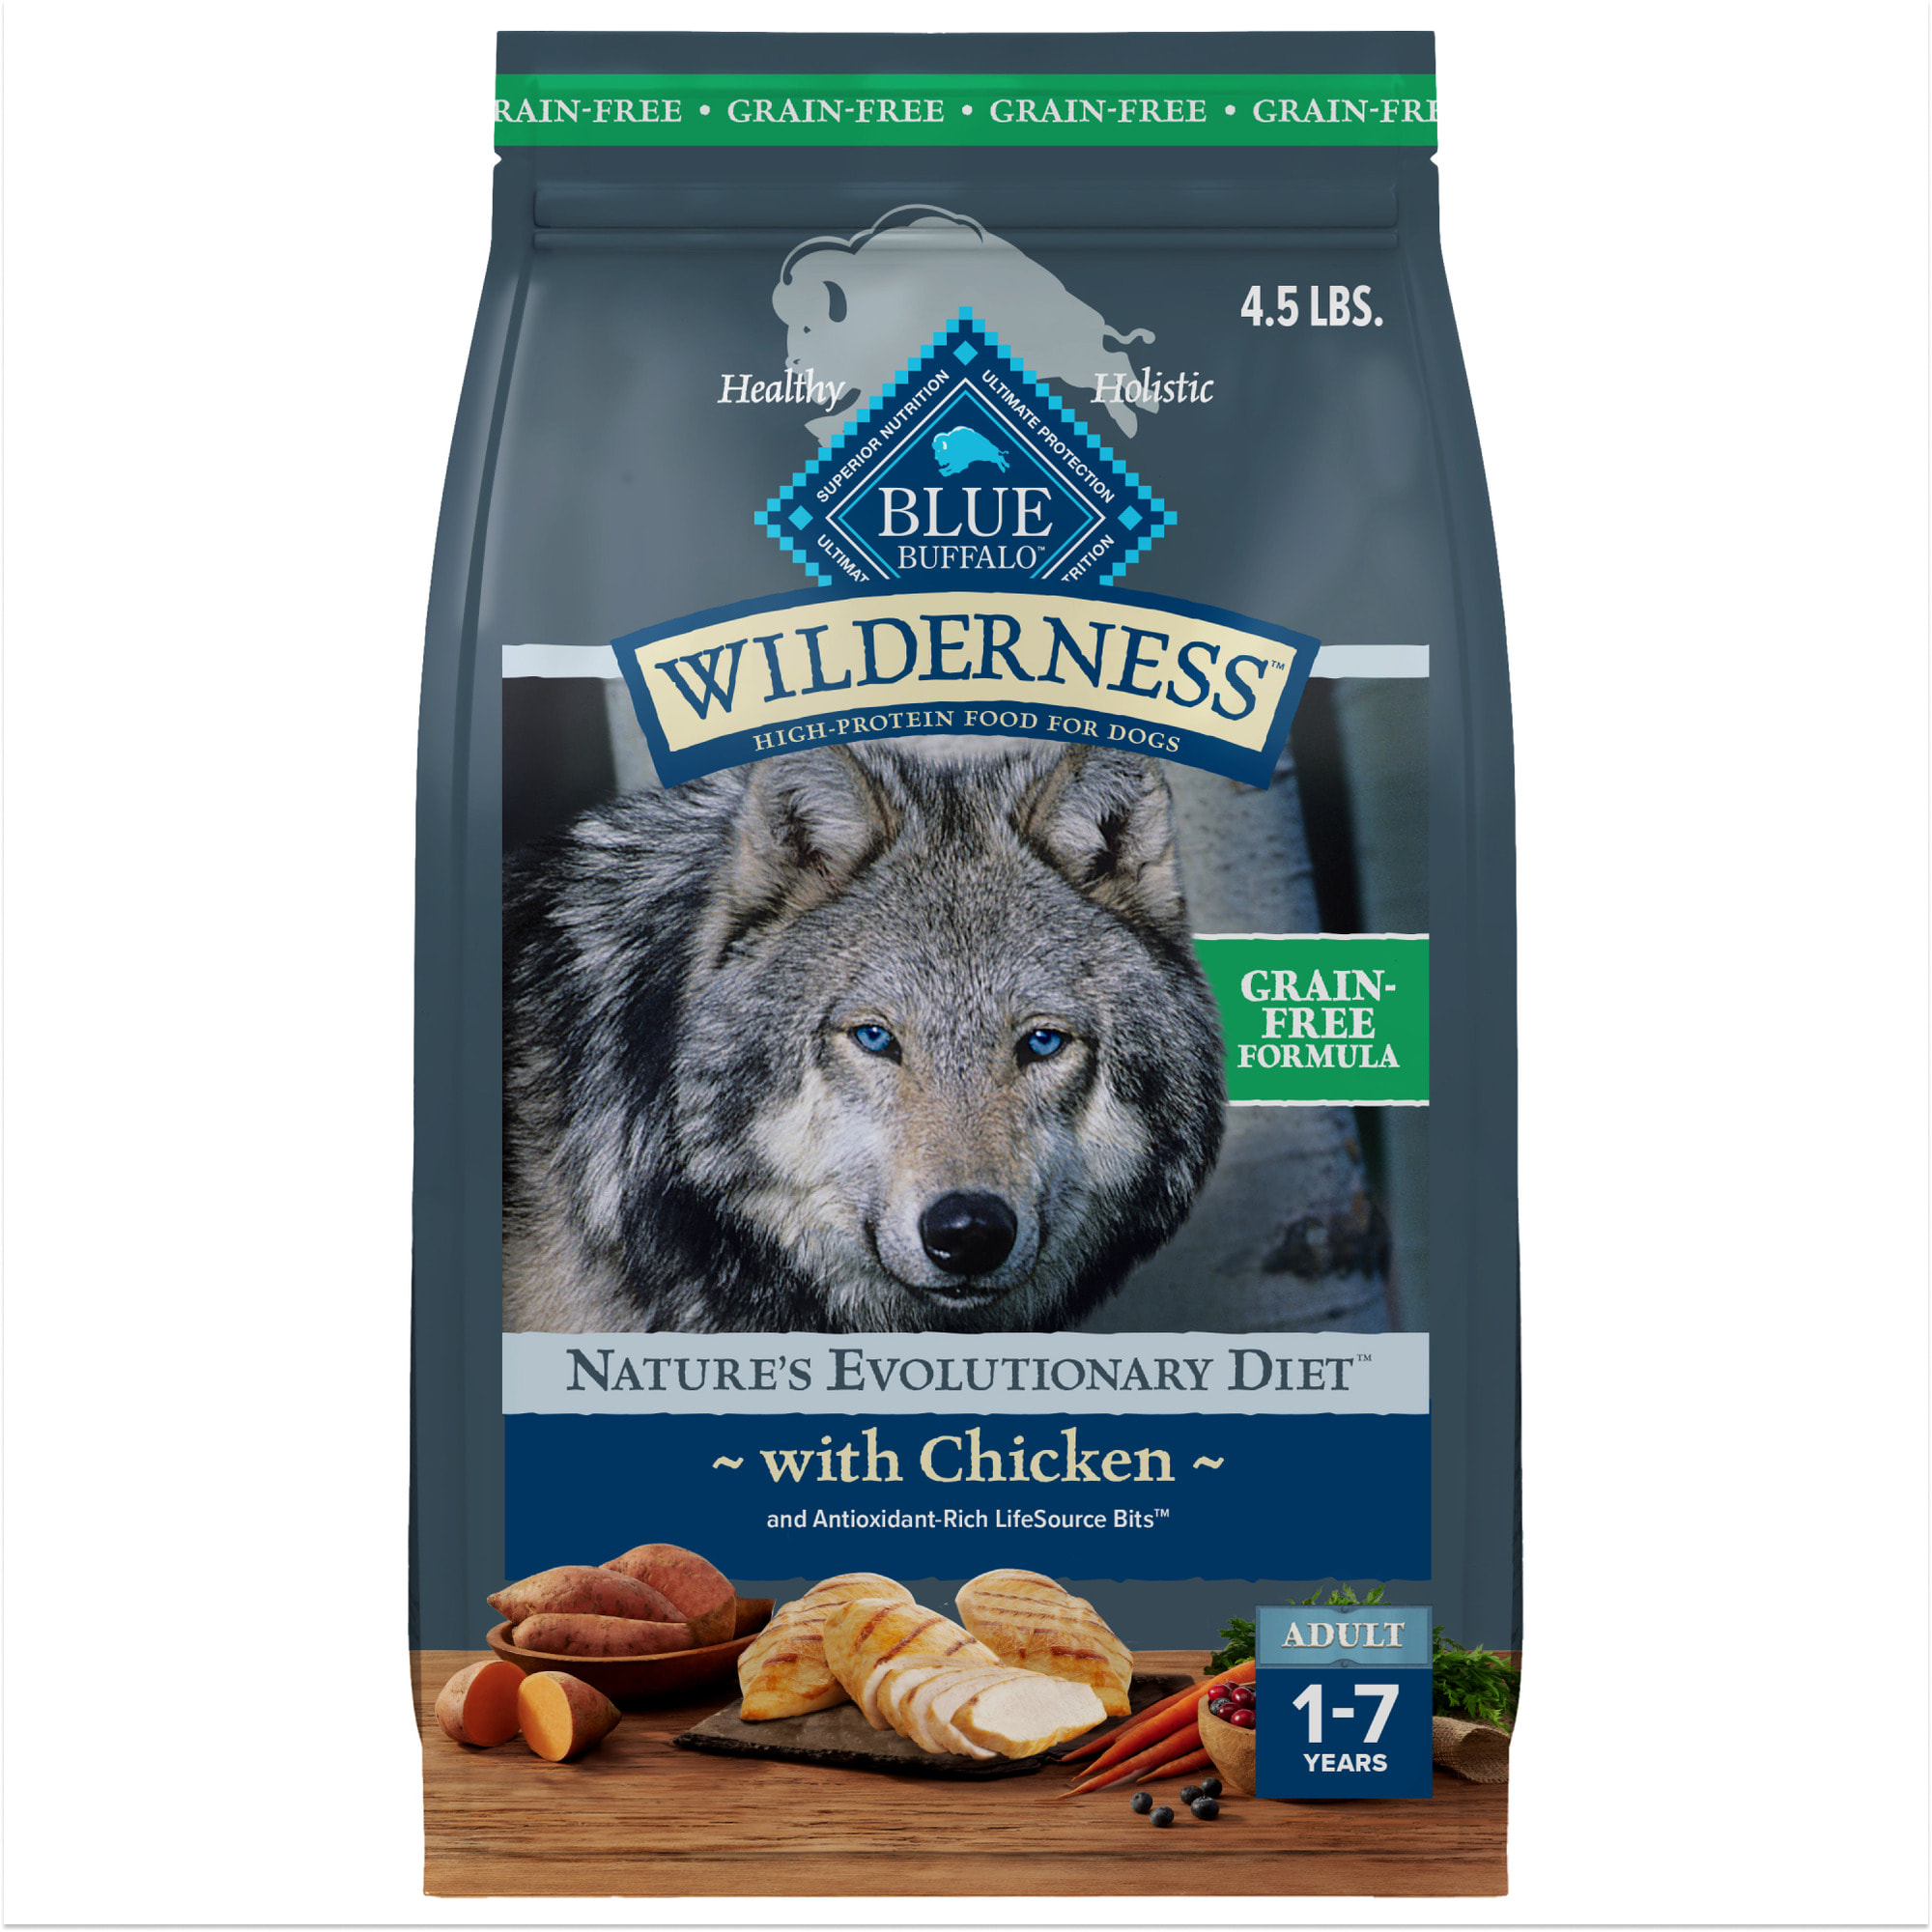 blue diamond dog food coupons